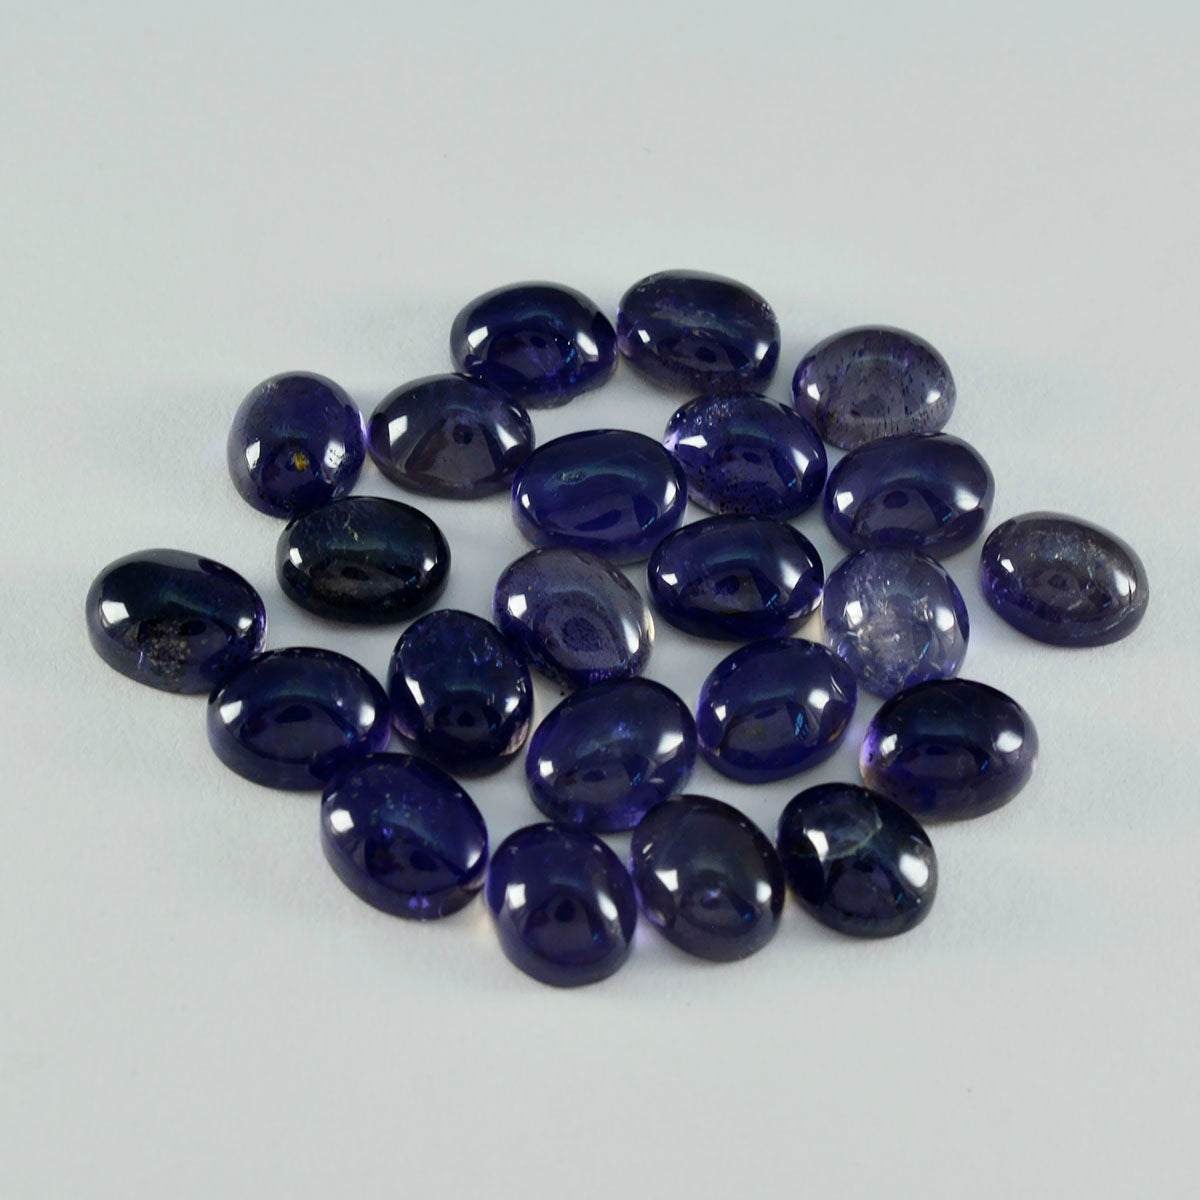 riyogems 1 шт. синий иолит кабошон 9x11 мм овальной формы прекрасное качество россыпь драгоценных камней